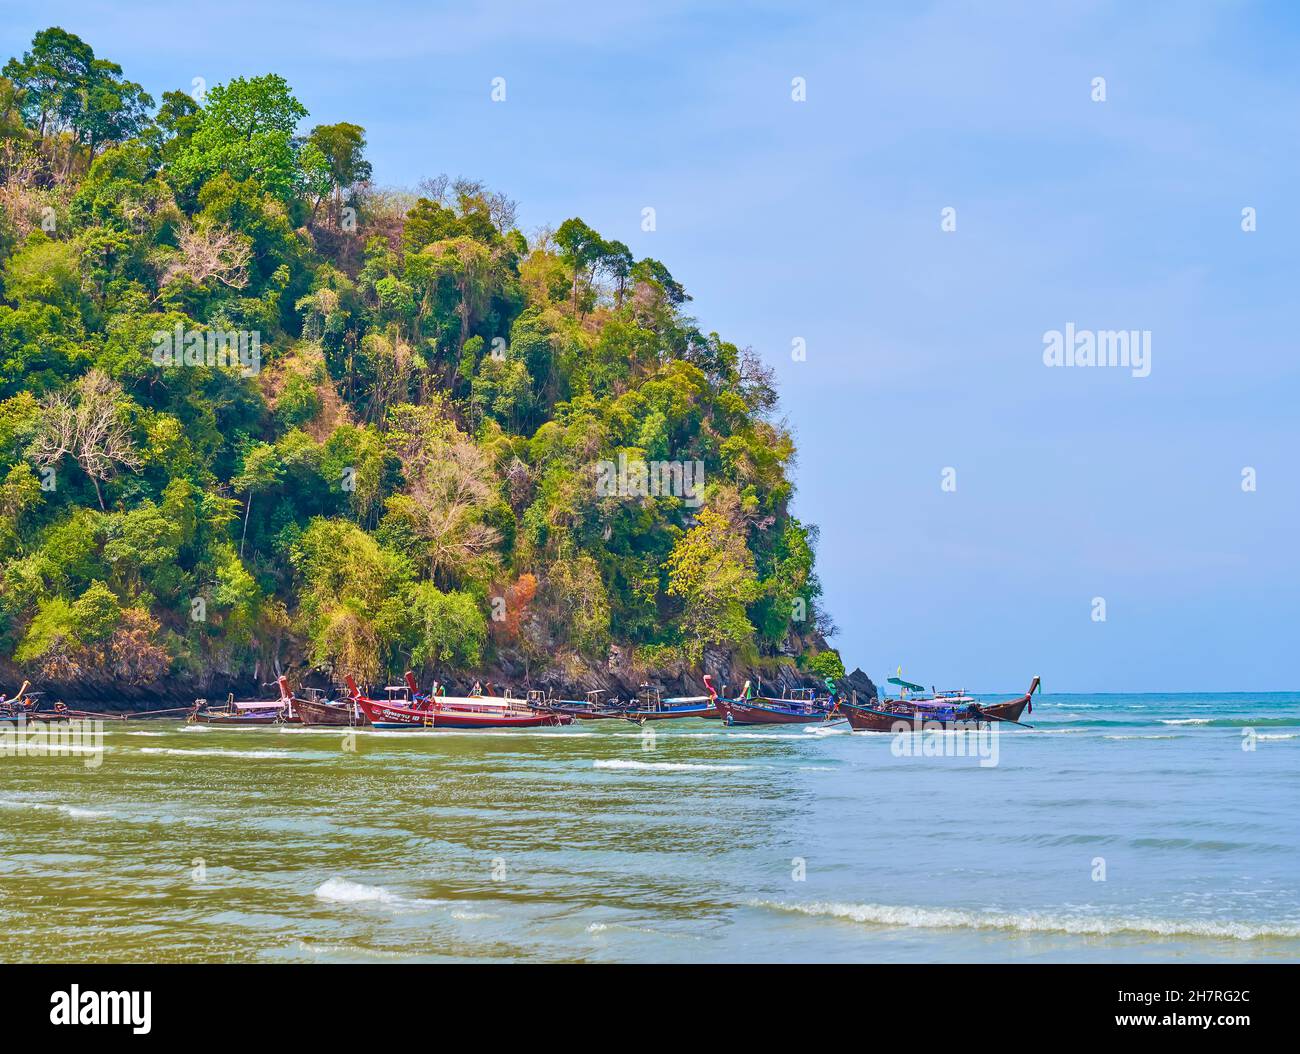 La vista sulla costa rocciosa della spiaggia di Ao Nang con barche a coda lunga ormeggiate, Krabi, Thailandia Foto Stock